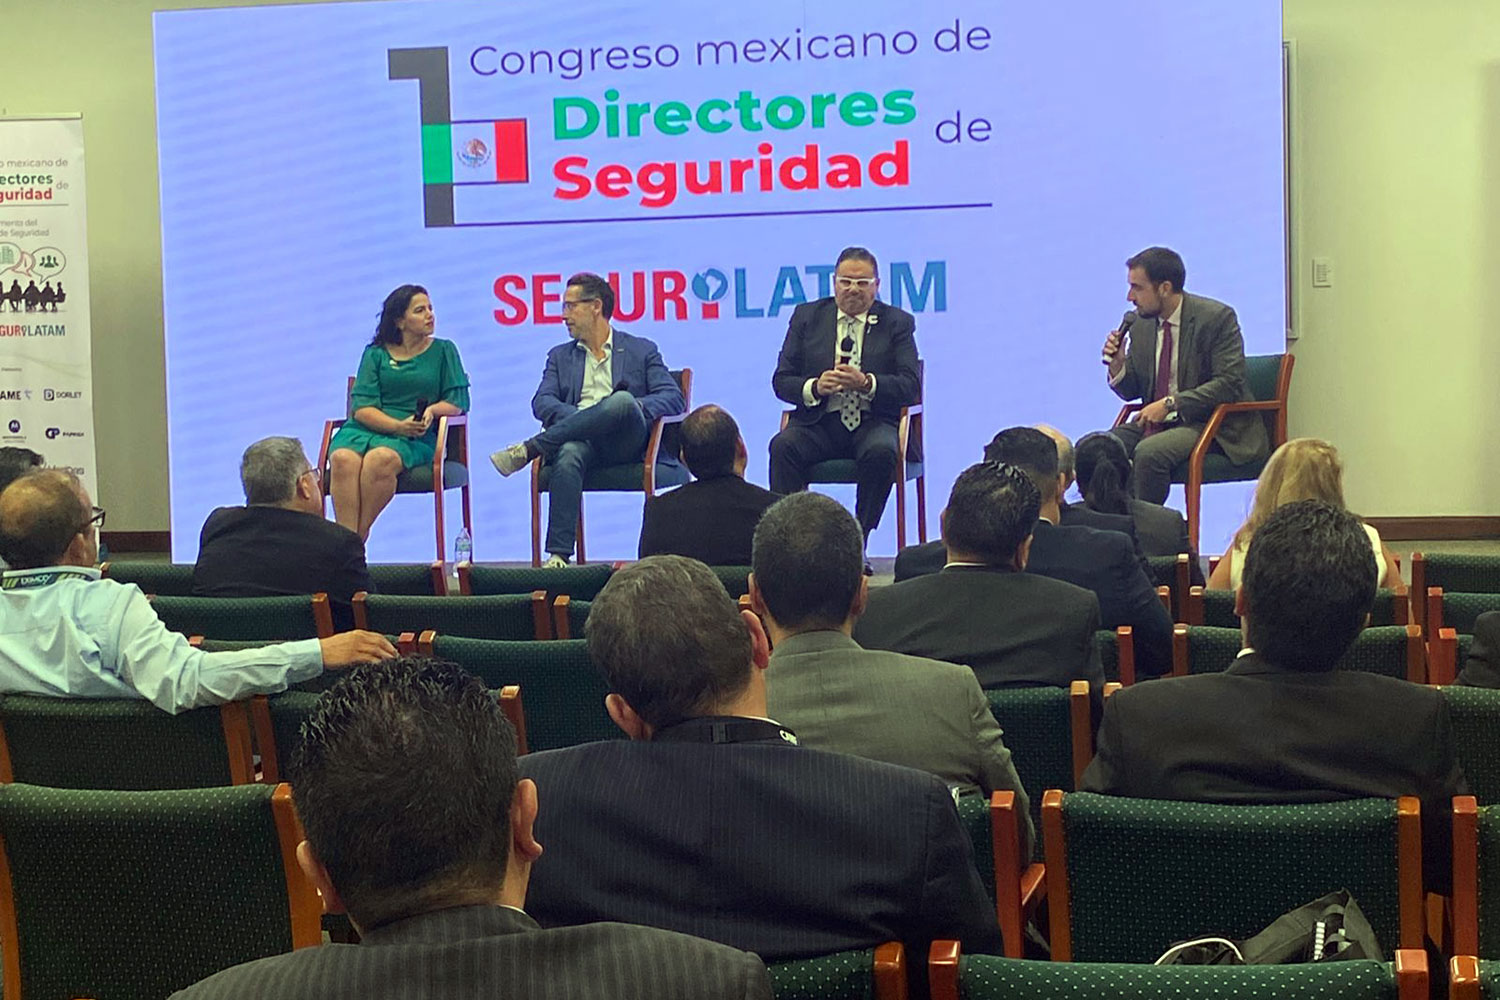 De izquierda a derecha: Ana Luisa Guzmán (AMEXSI), Héctor Coronado (Gemarc), José Luis Alvarado (ASIS Capítulo México) y Javier Borredá (‘Segurilatam) en el Congreso Mexicano de Directores de Seguridad